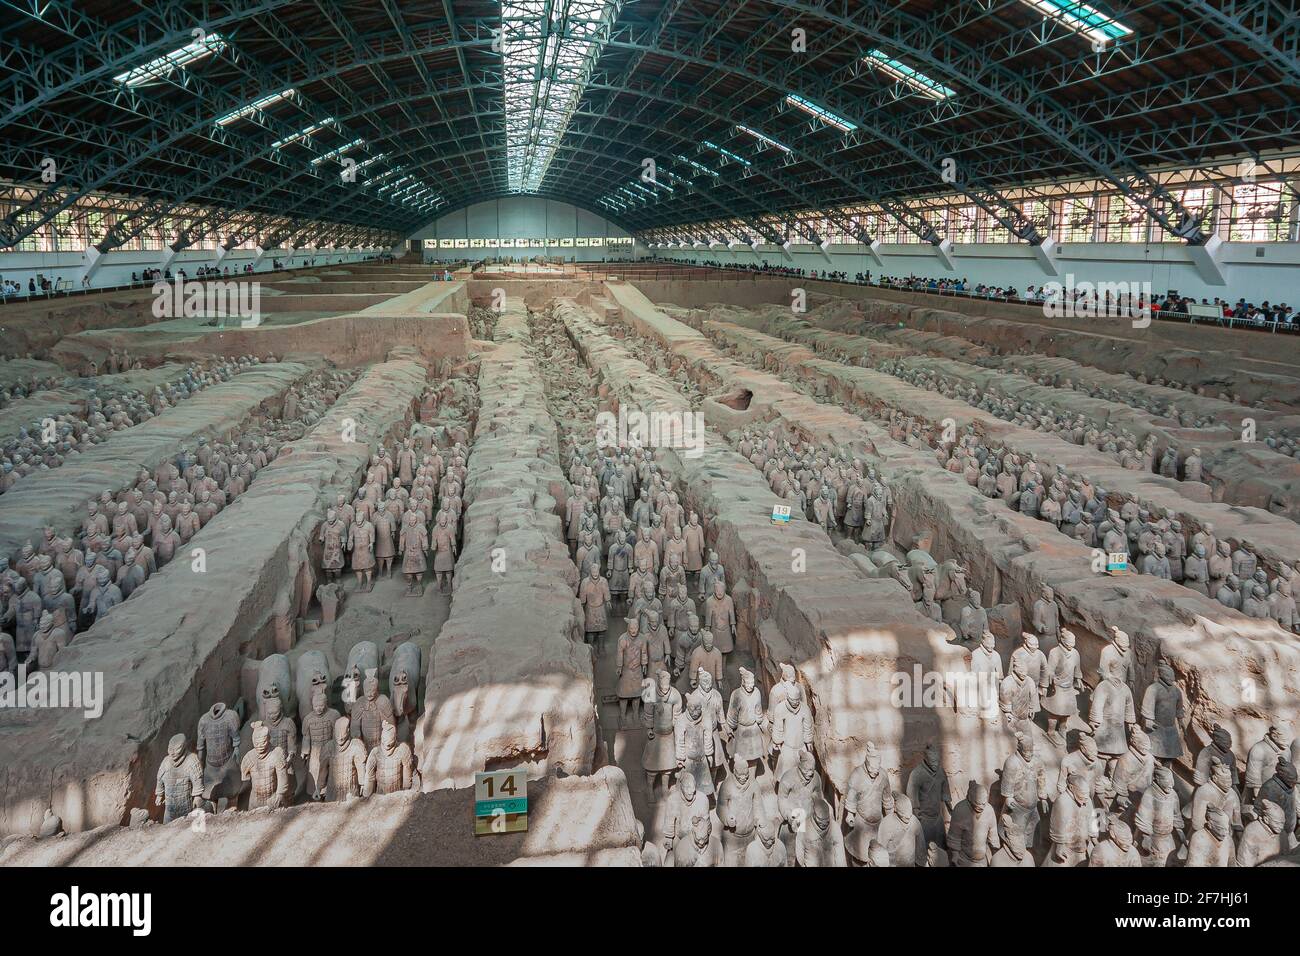 Xian, Cina - 1 maggio 2010: Esercito di terracotta di Qin Shi Huang. Enorme tetto di sala su scavi di terra beige con centinaia di soldati e statue di cavalli. Foto Stock